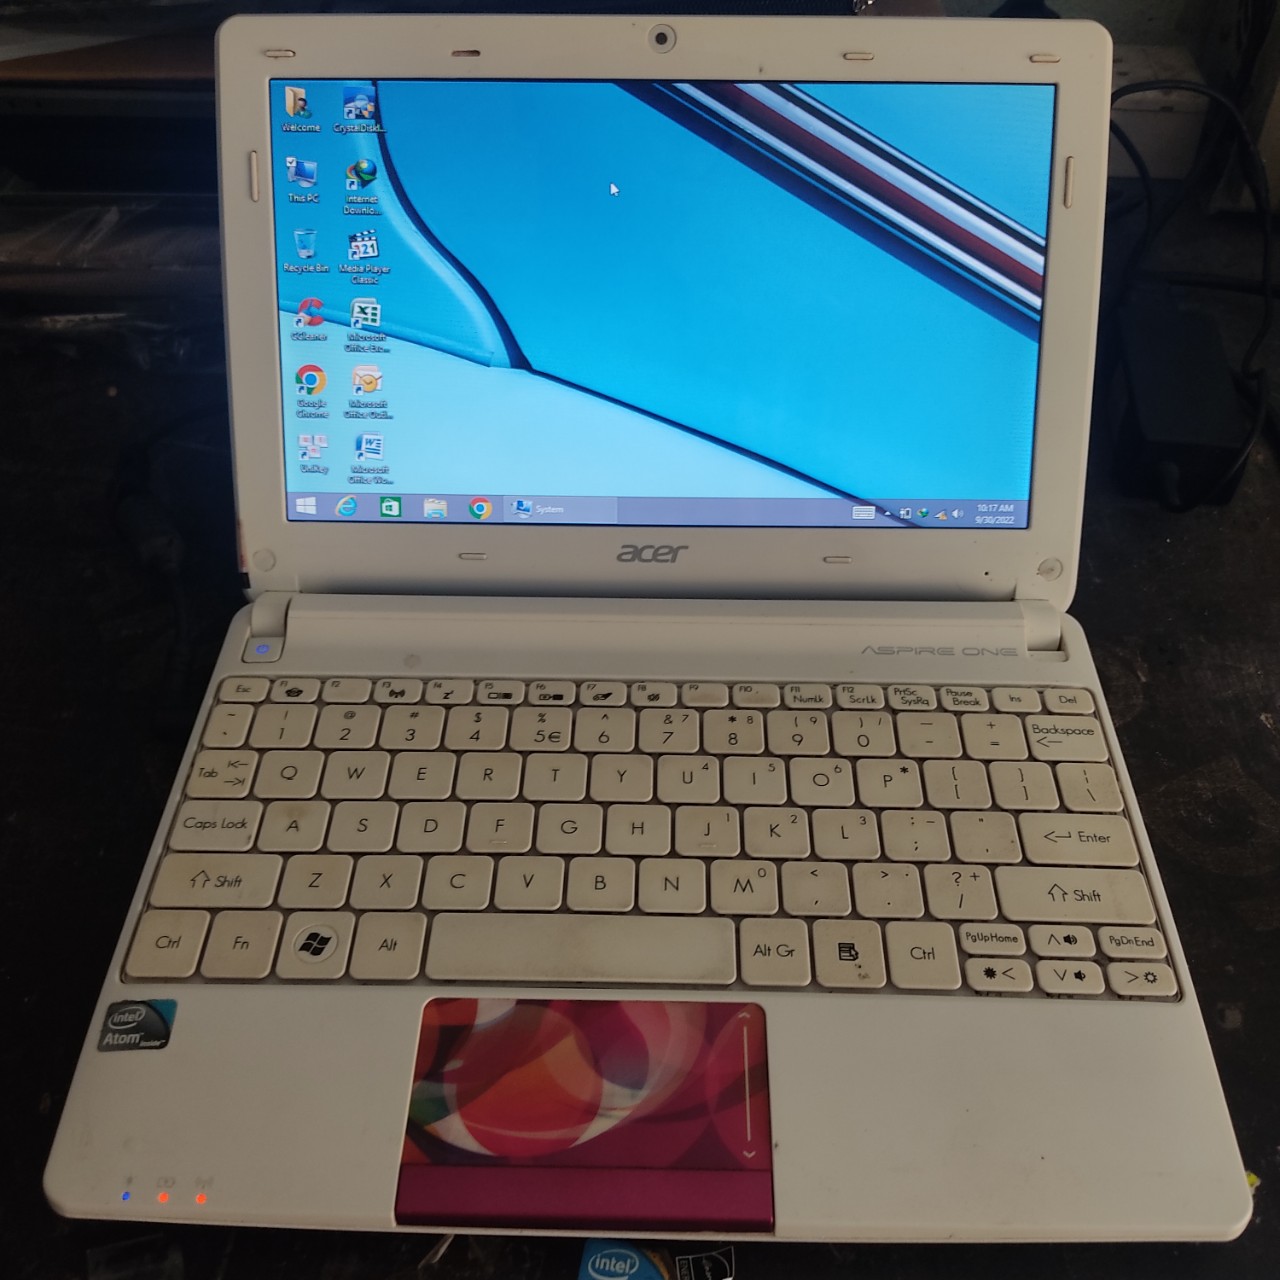 Laptop Acer Aspire One màu trắng dùng cho học tập, giải trí, công việc v.v... đầy đủ phần mềm cơ bản